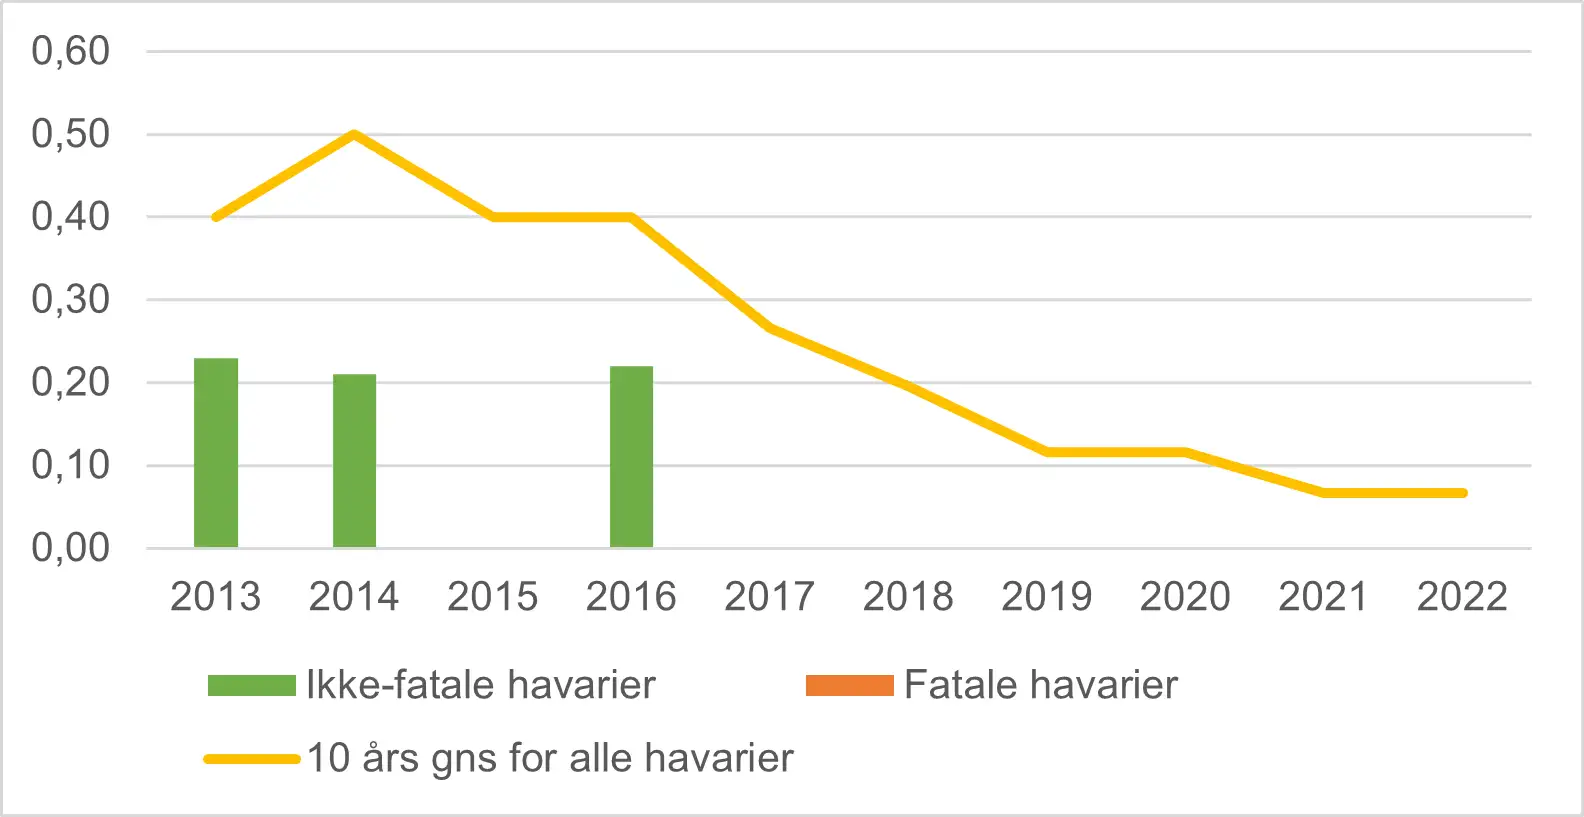 Billedet viser figur 1, som er et diagram over havarier og fatale havarier pr. 100.000 flyvninger inden for dansk kommerciel luftfart 2013-2022